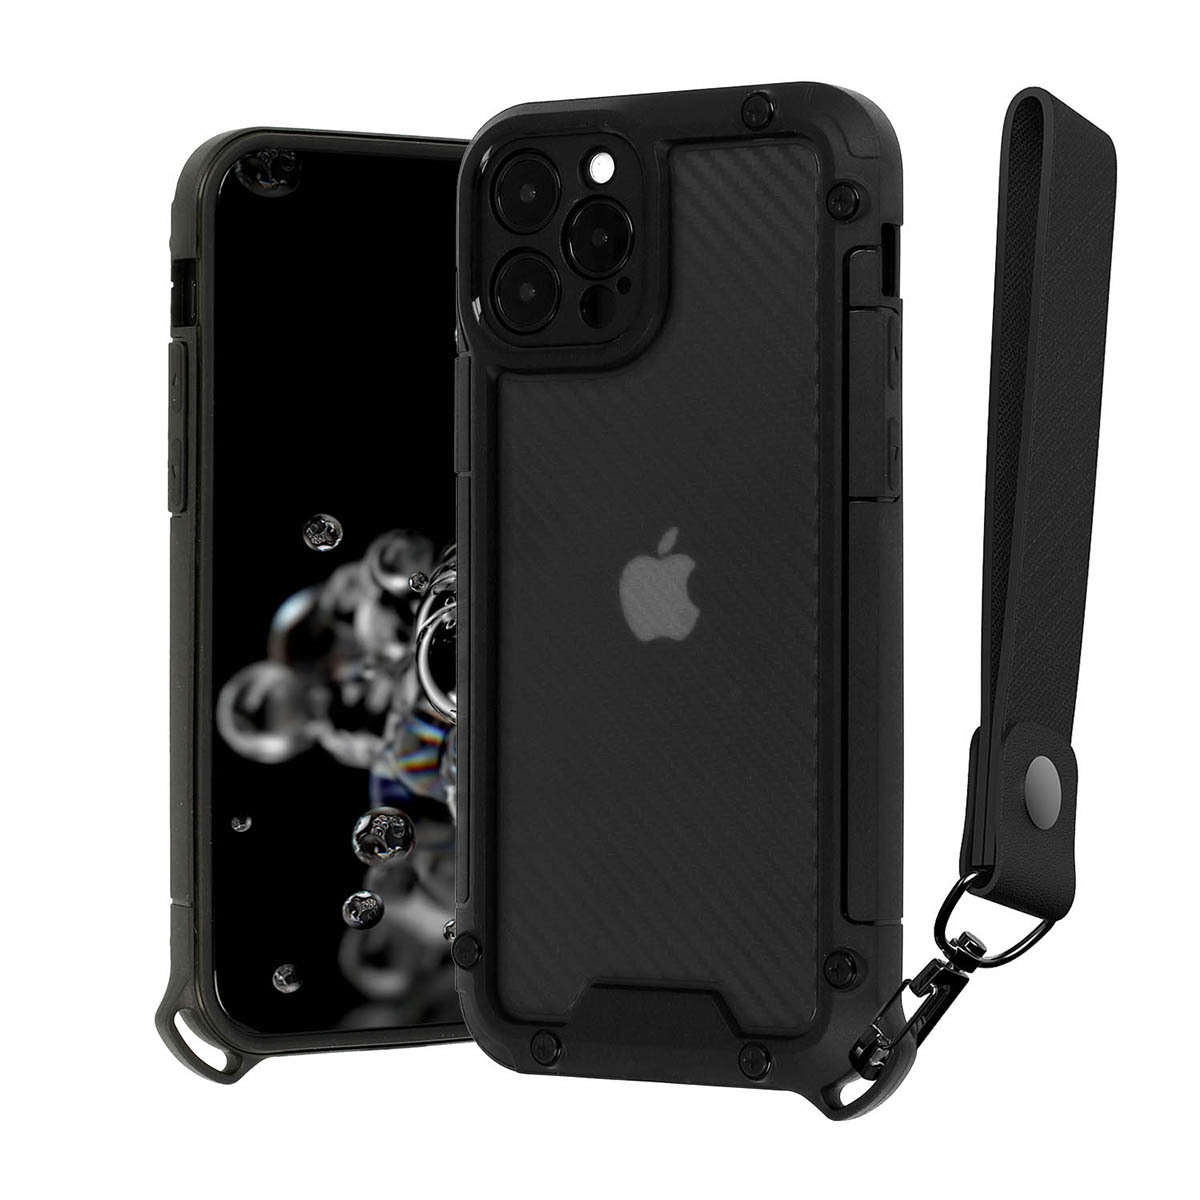 Pouzdro TECH-PROTECT Shield Case pro Iphone 12 Pro černá